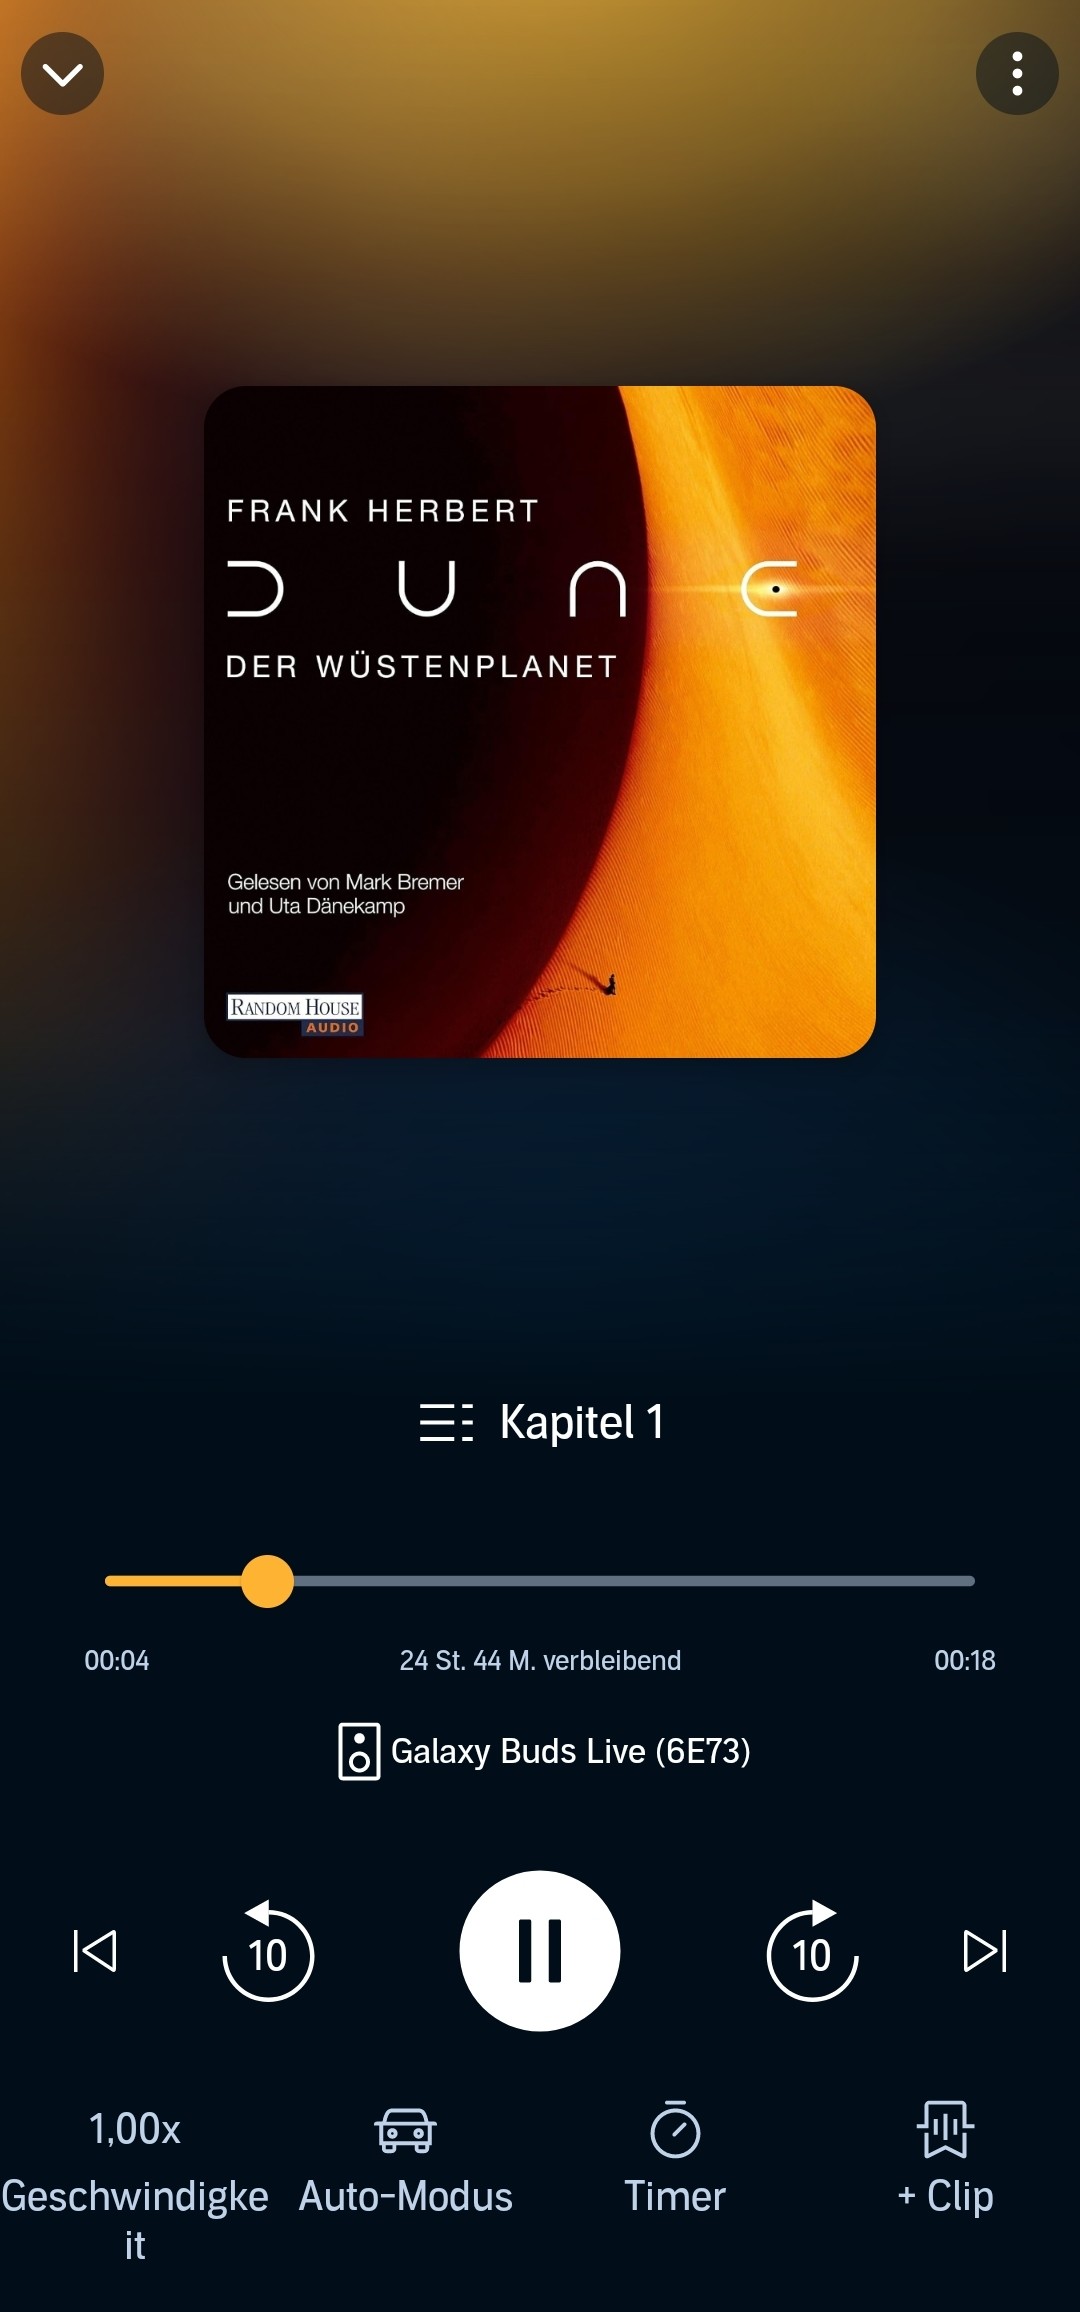 Bildschirmfoto vom Hörbuch namens DUNE - DER WÜSTENPLANET aus Audible auf dem Smartphone.